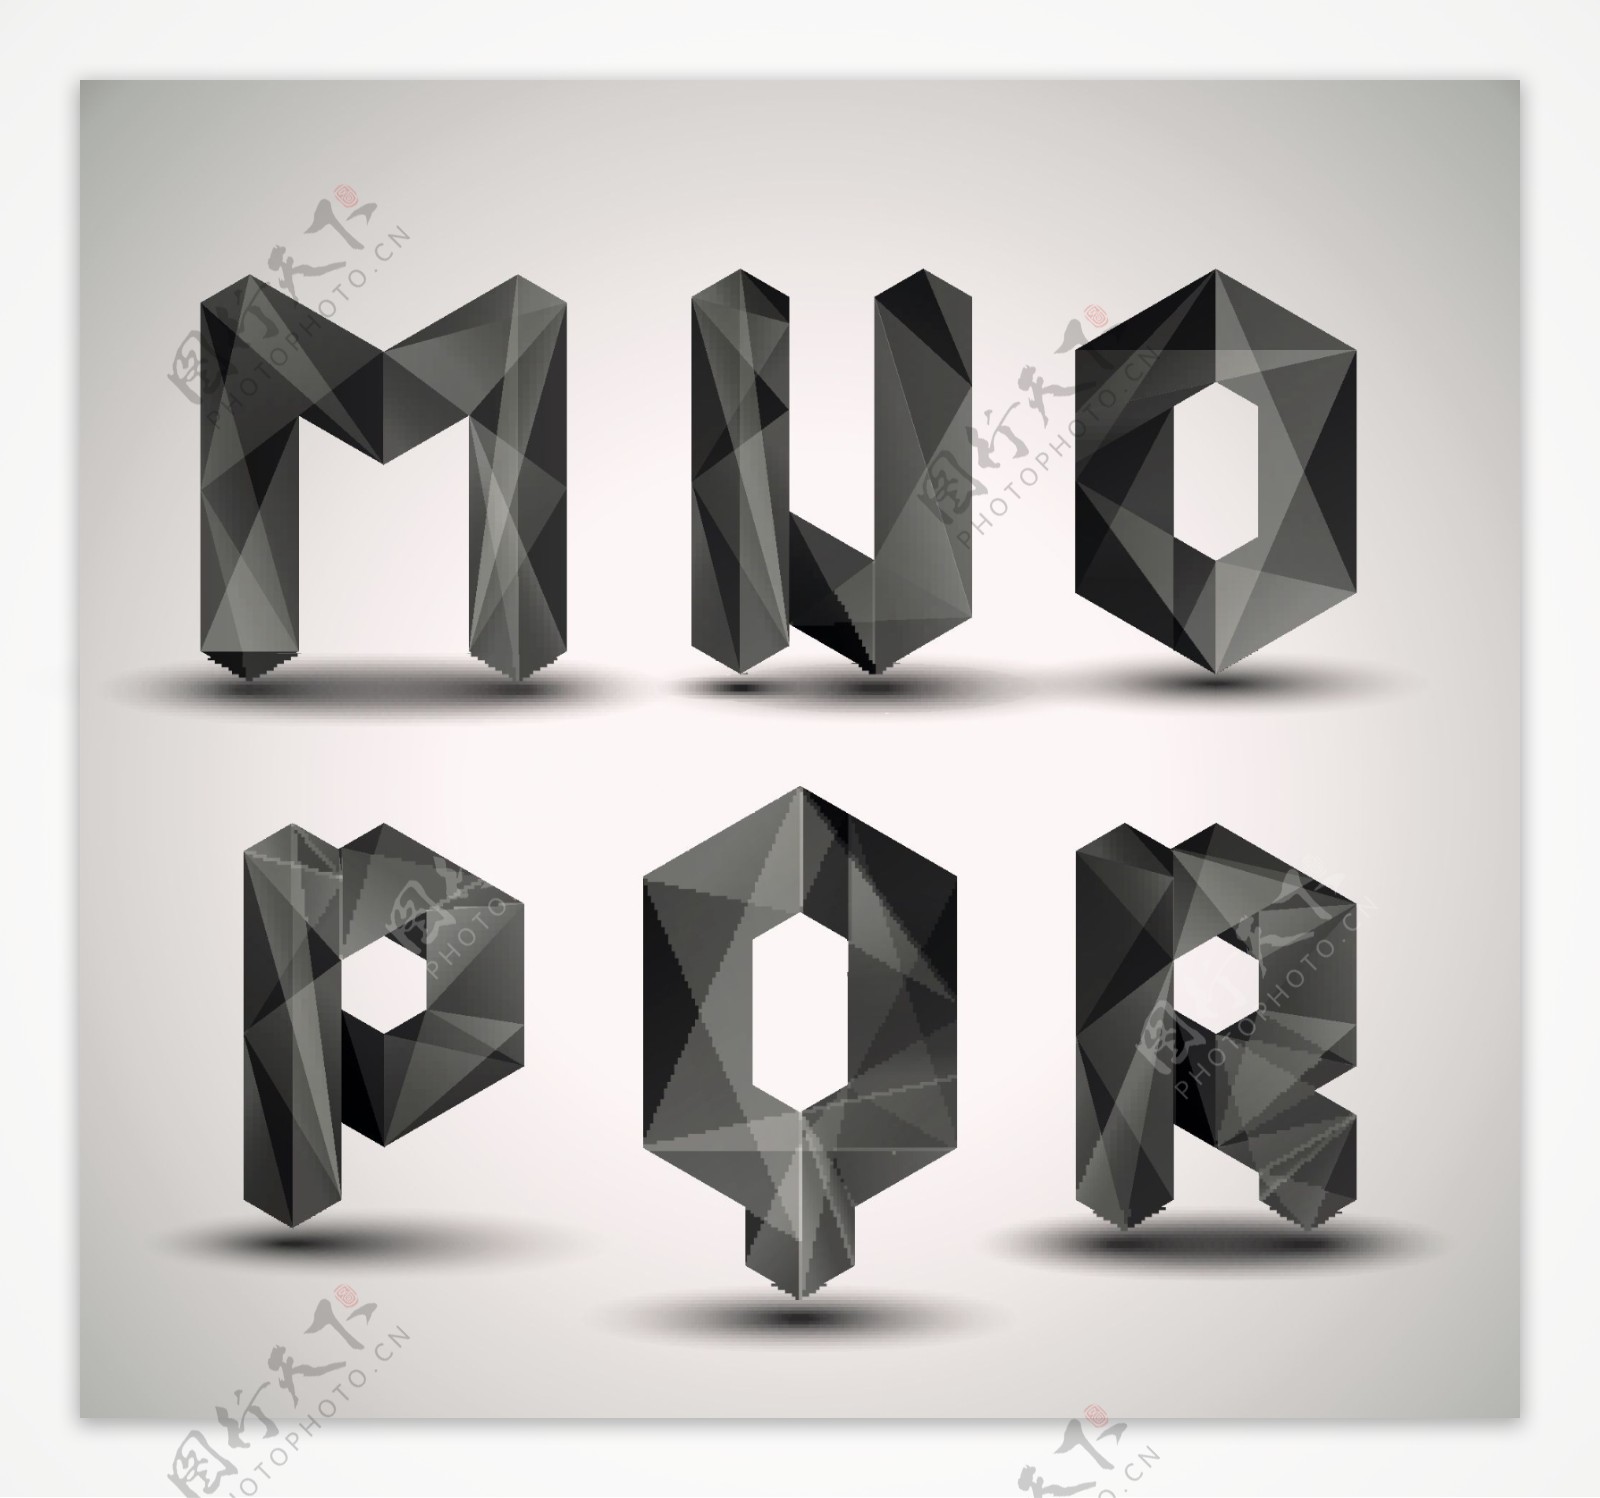 3d金属质感字母矢量图片